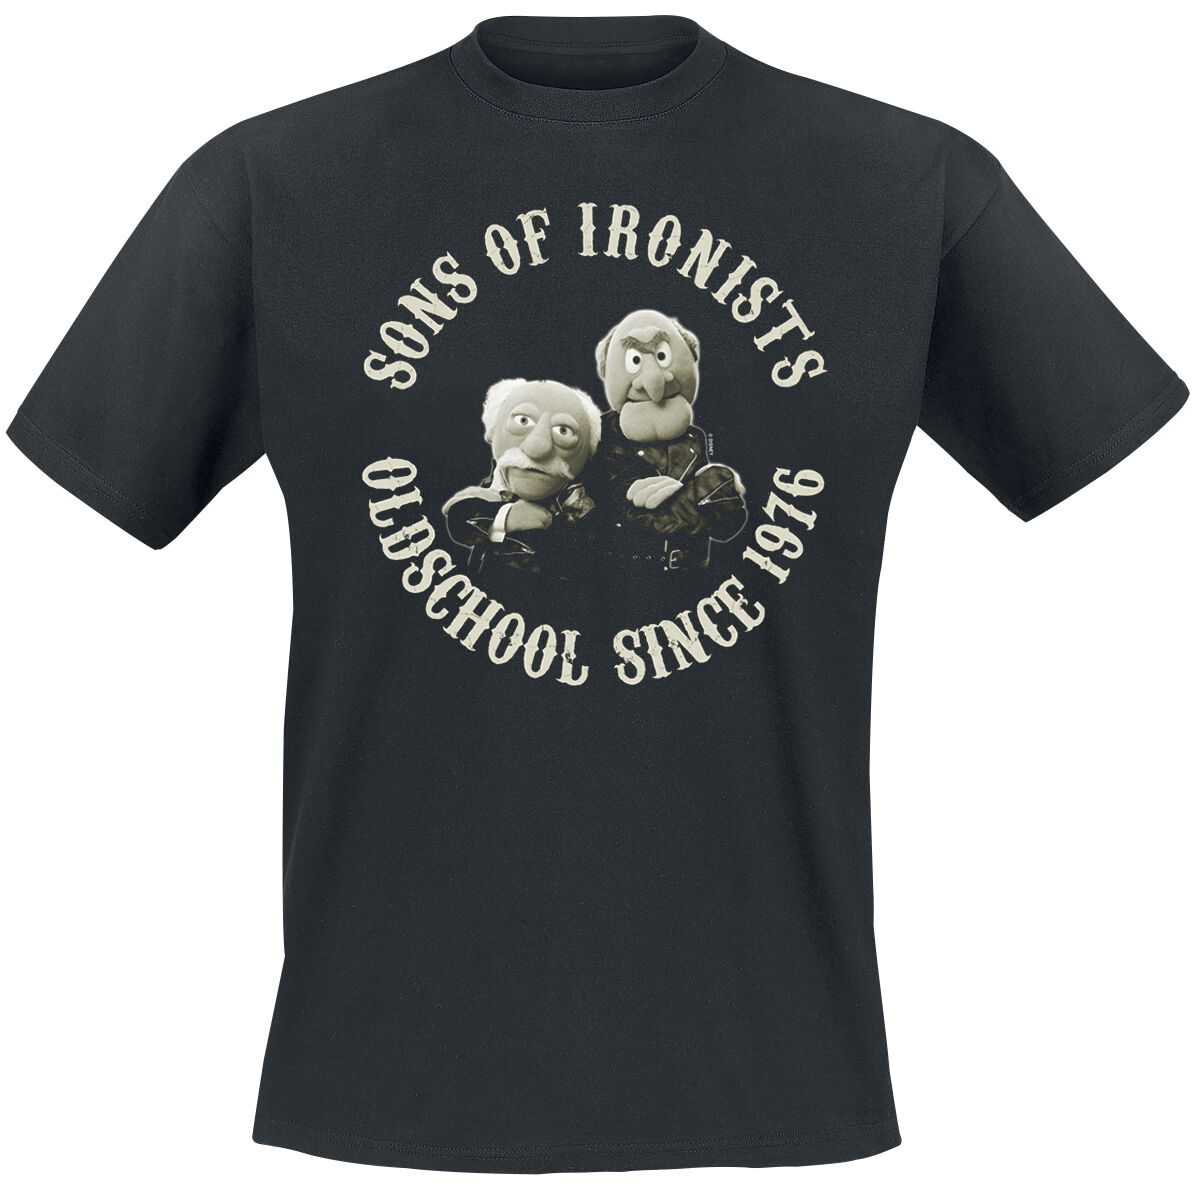 Die Muppets T-Shirt - Sons Of Ironists - M bis 5XL - für Männer - Größe M - schwarz  - Lizenzierter Fanartikel